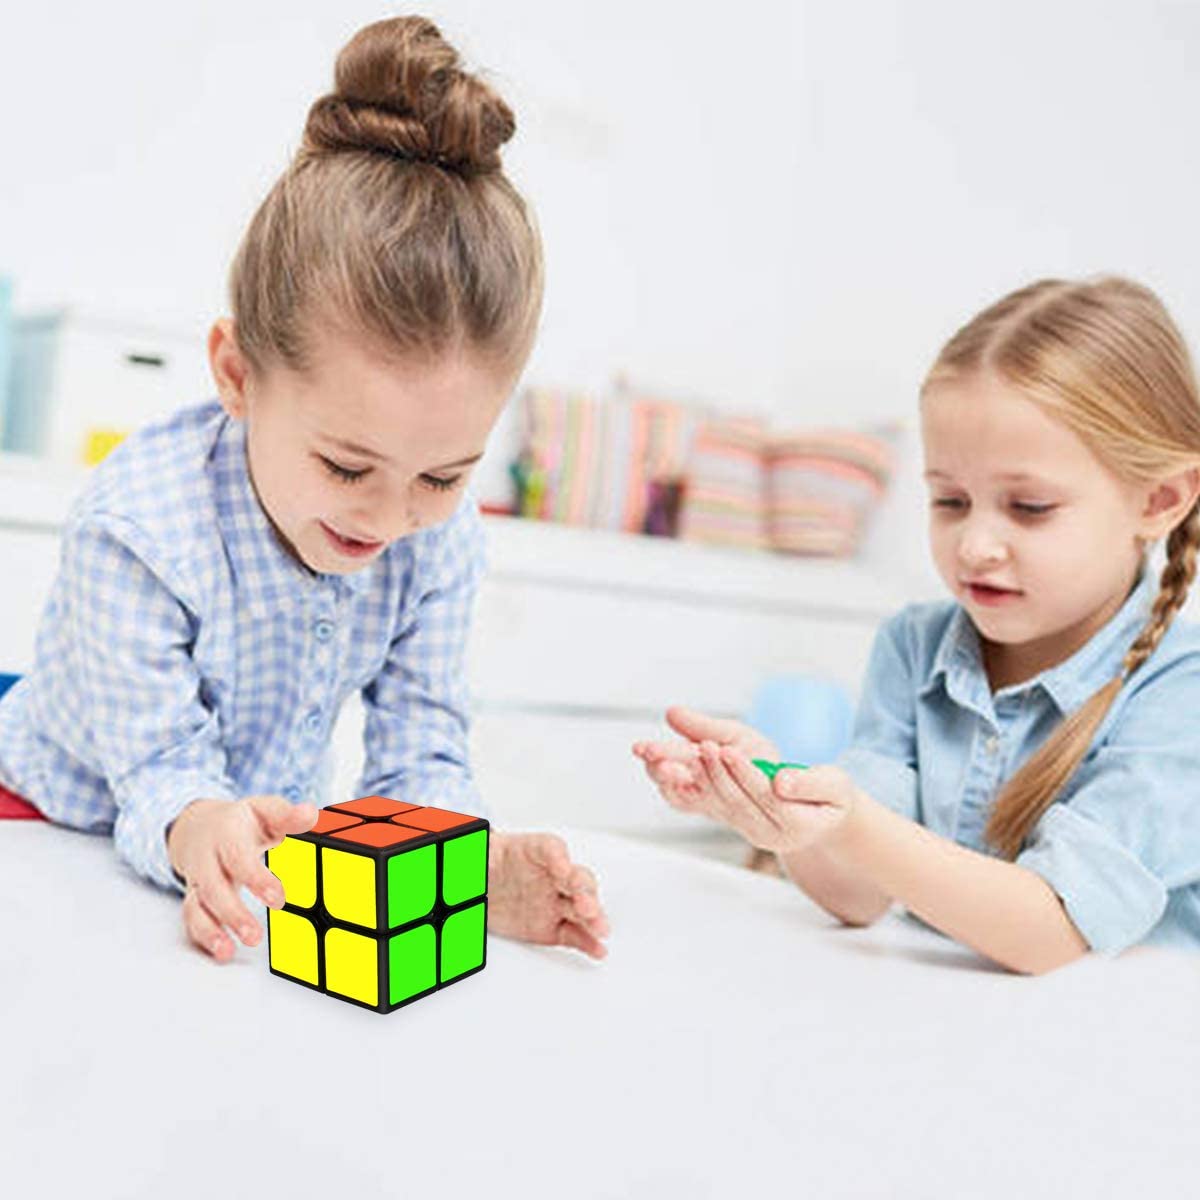 Khối Rubik 2x2 X 2 Bằng Nhựa Pvc Dành Cho Người Lớn Và Trẻ Em